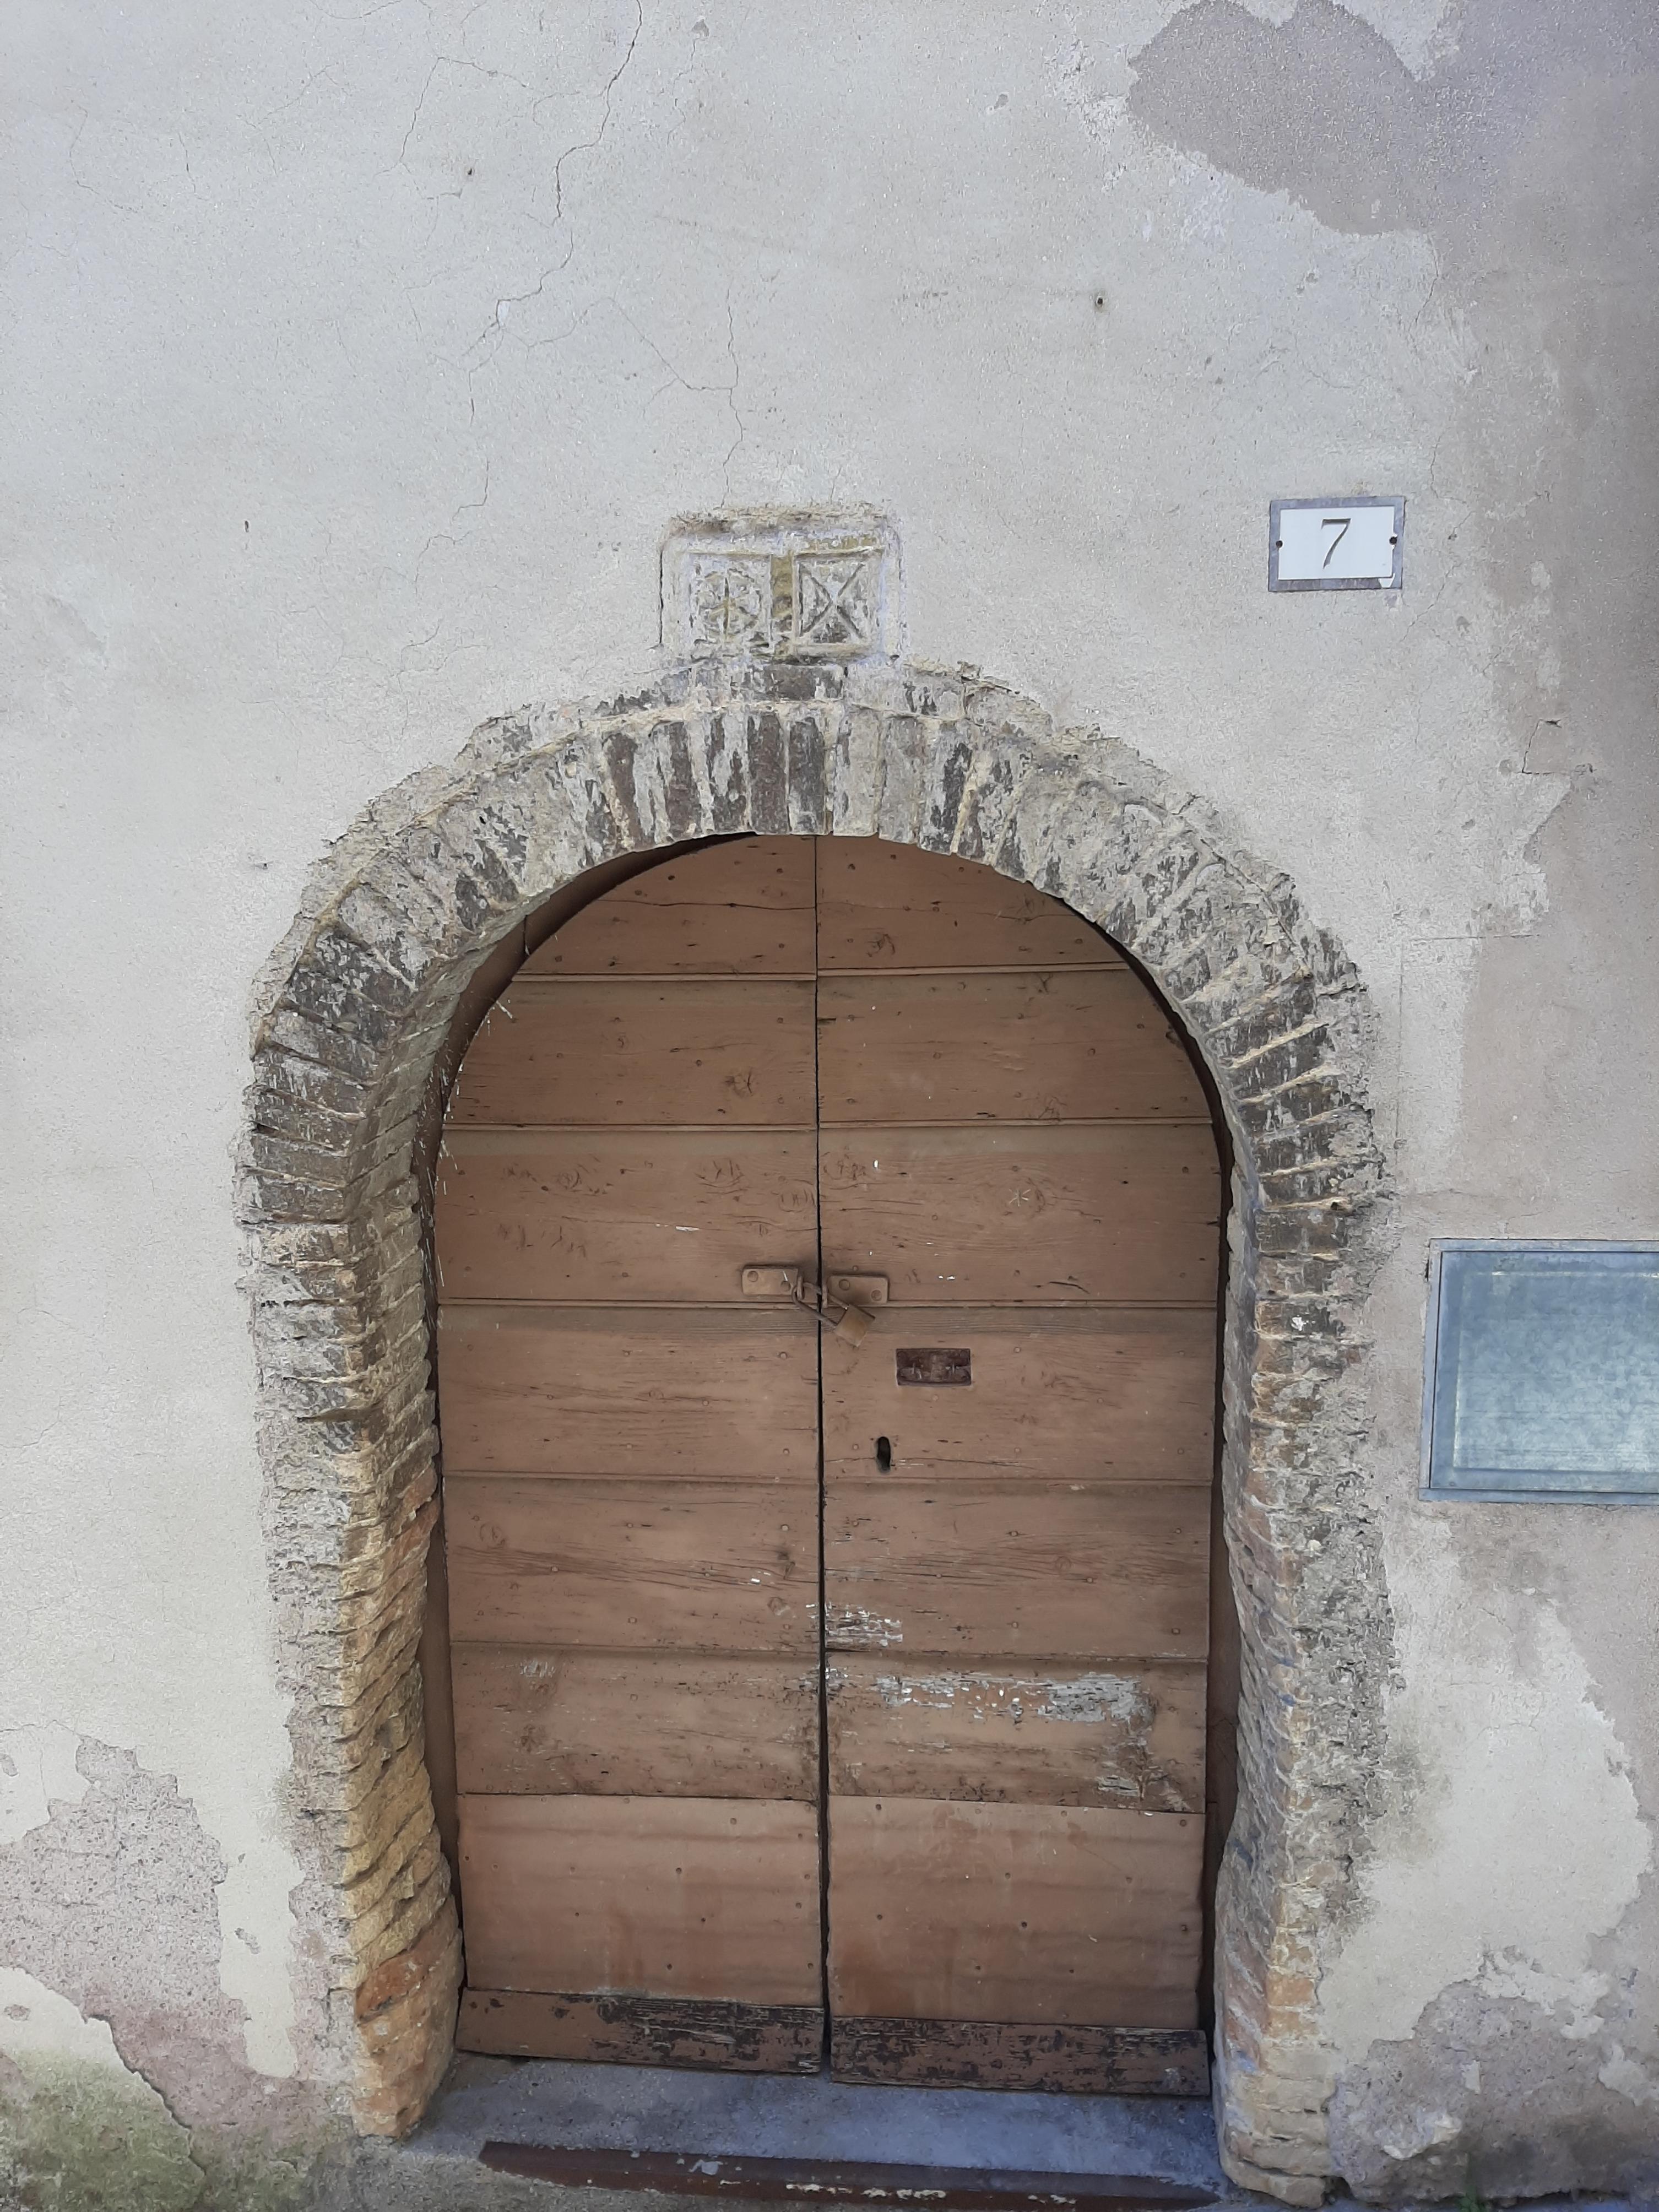 La foto riproduce la mattonella col simbolo difficilmente decifrabile inserito sopra il portone di ingresso di una casa.